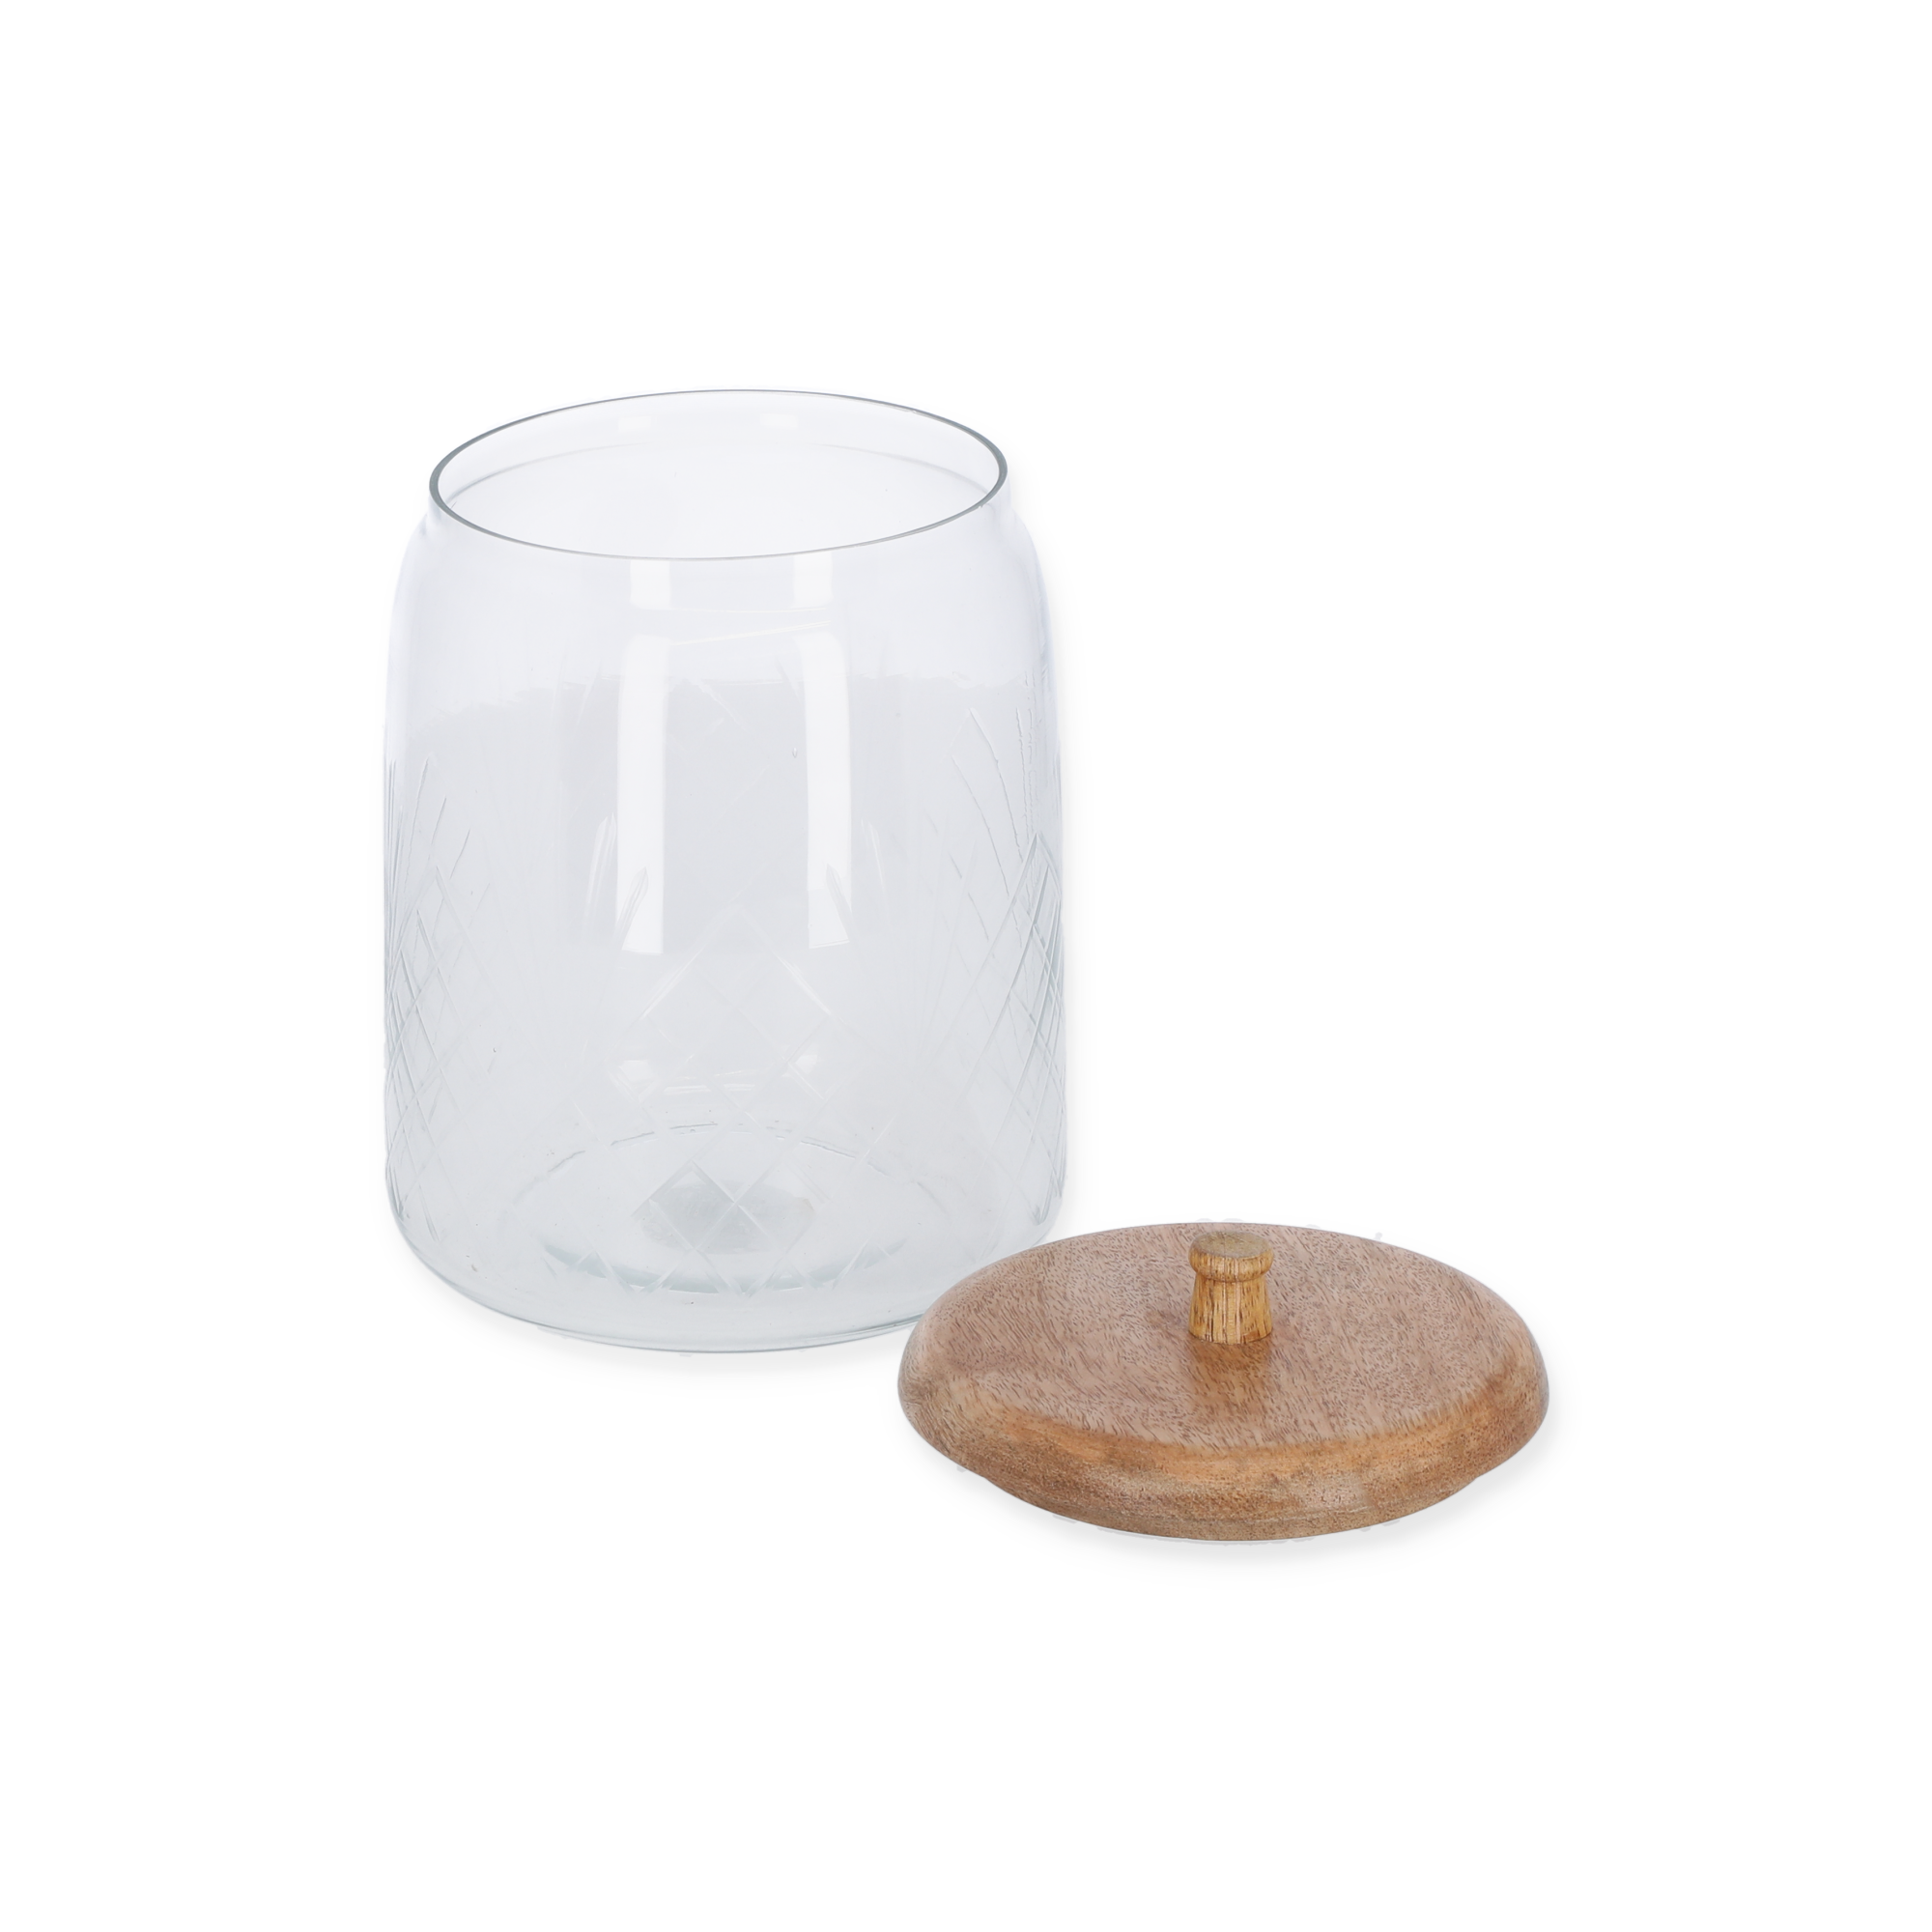 Dose Glas/Mangoholz transparent/braun Ø 15 x 21 cm + product picture